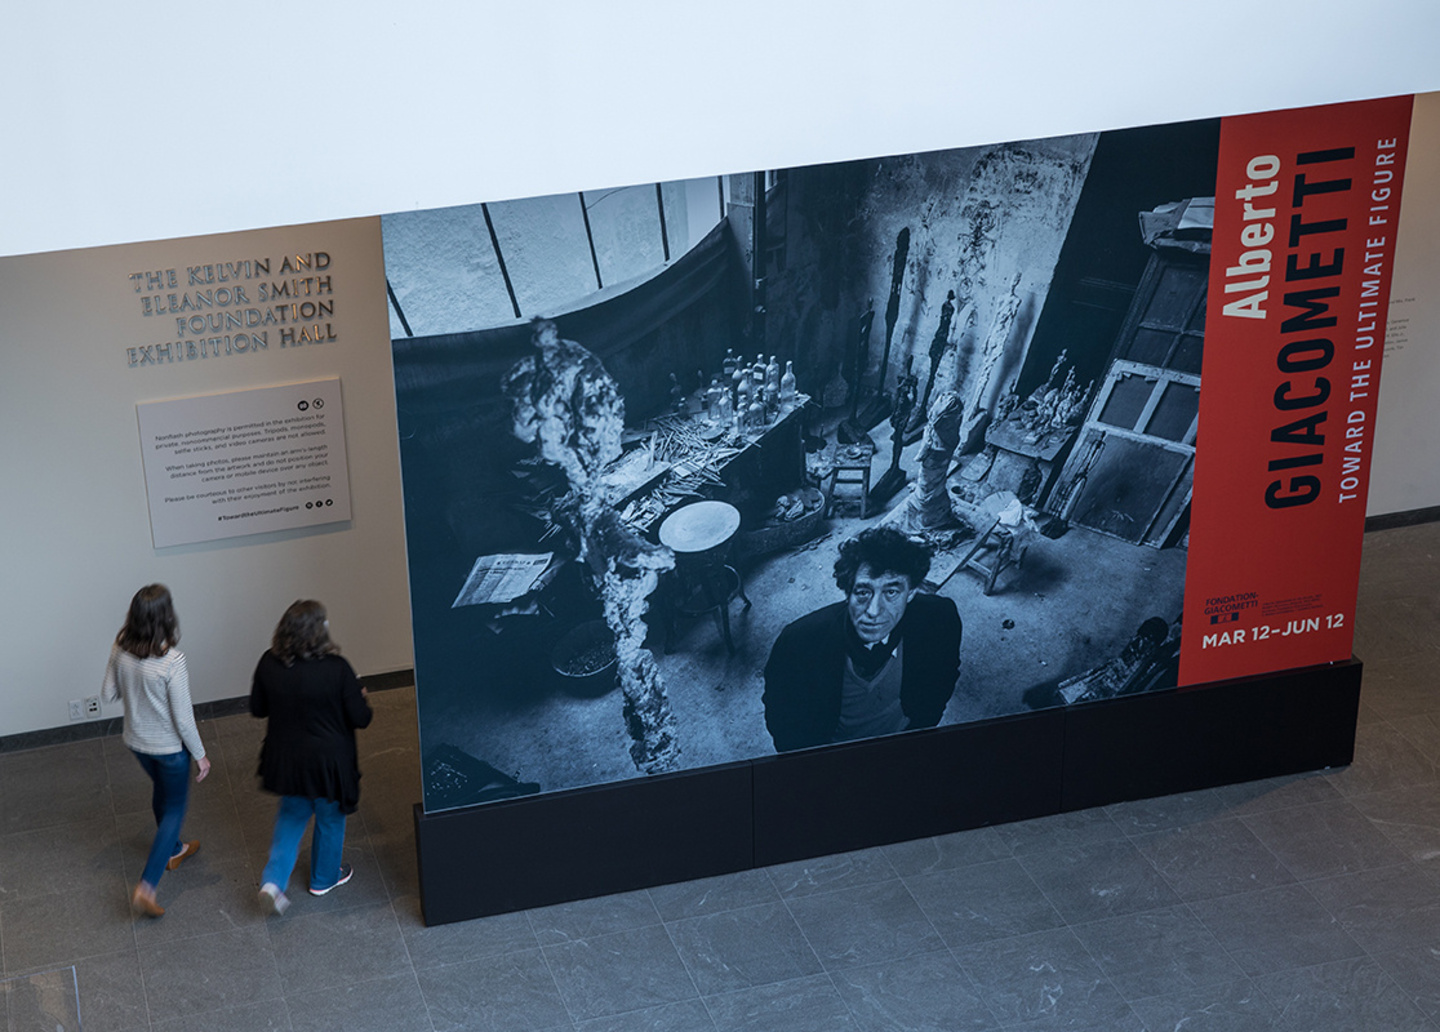 Fondation Giacometti - Alberto Giacometti: Toward the Ultimate Figure